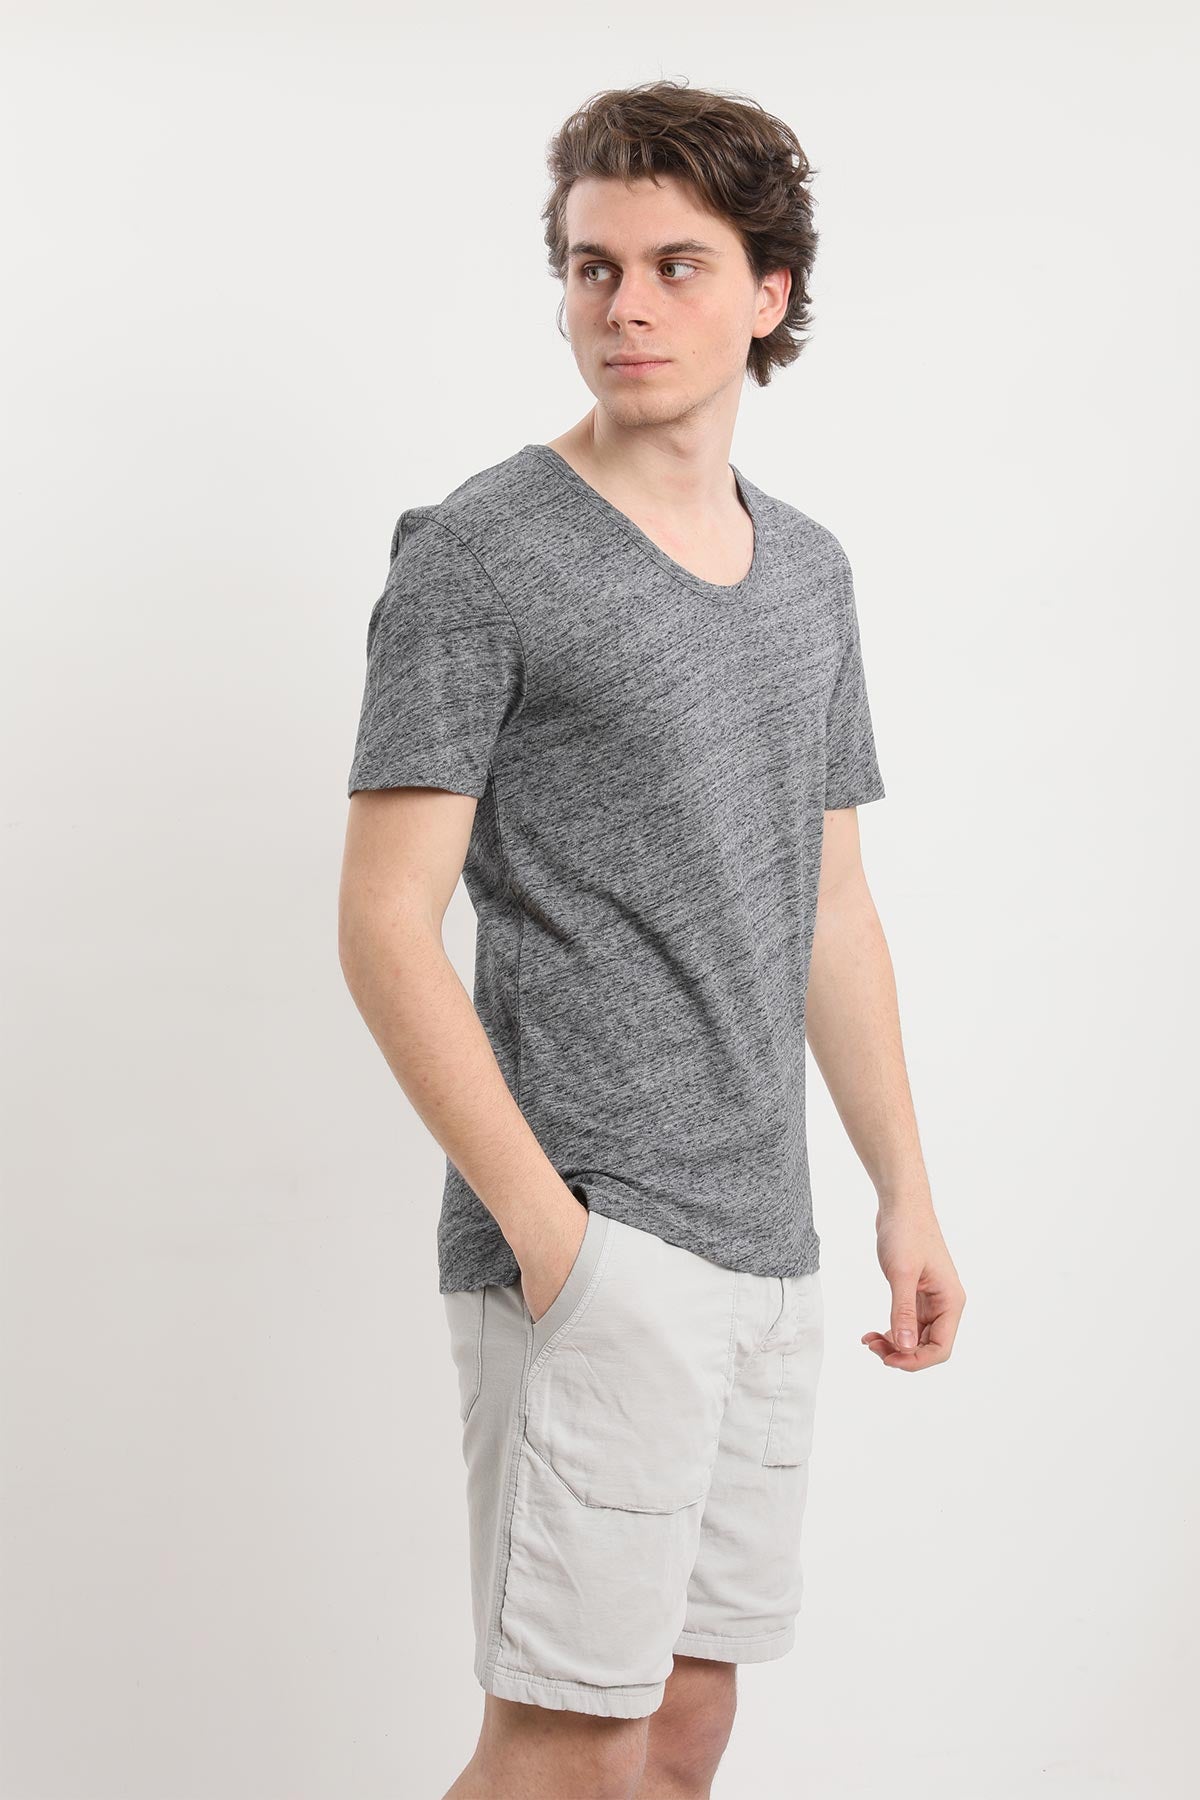 Tru T-shirt-Libas Trendy Fashion Store